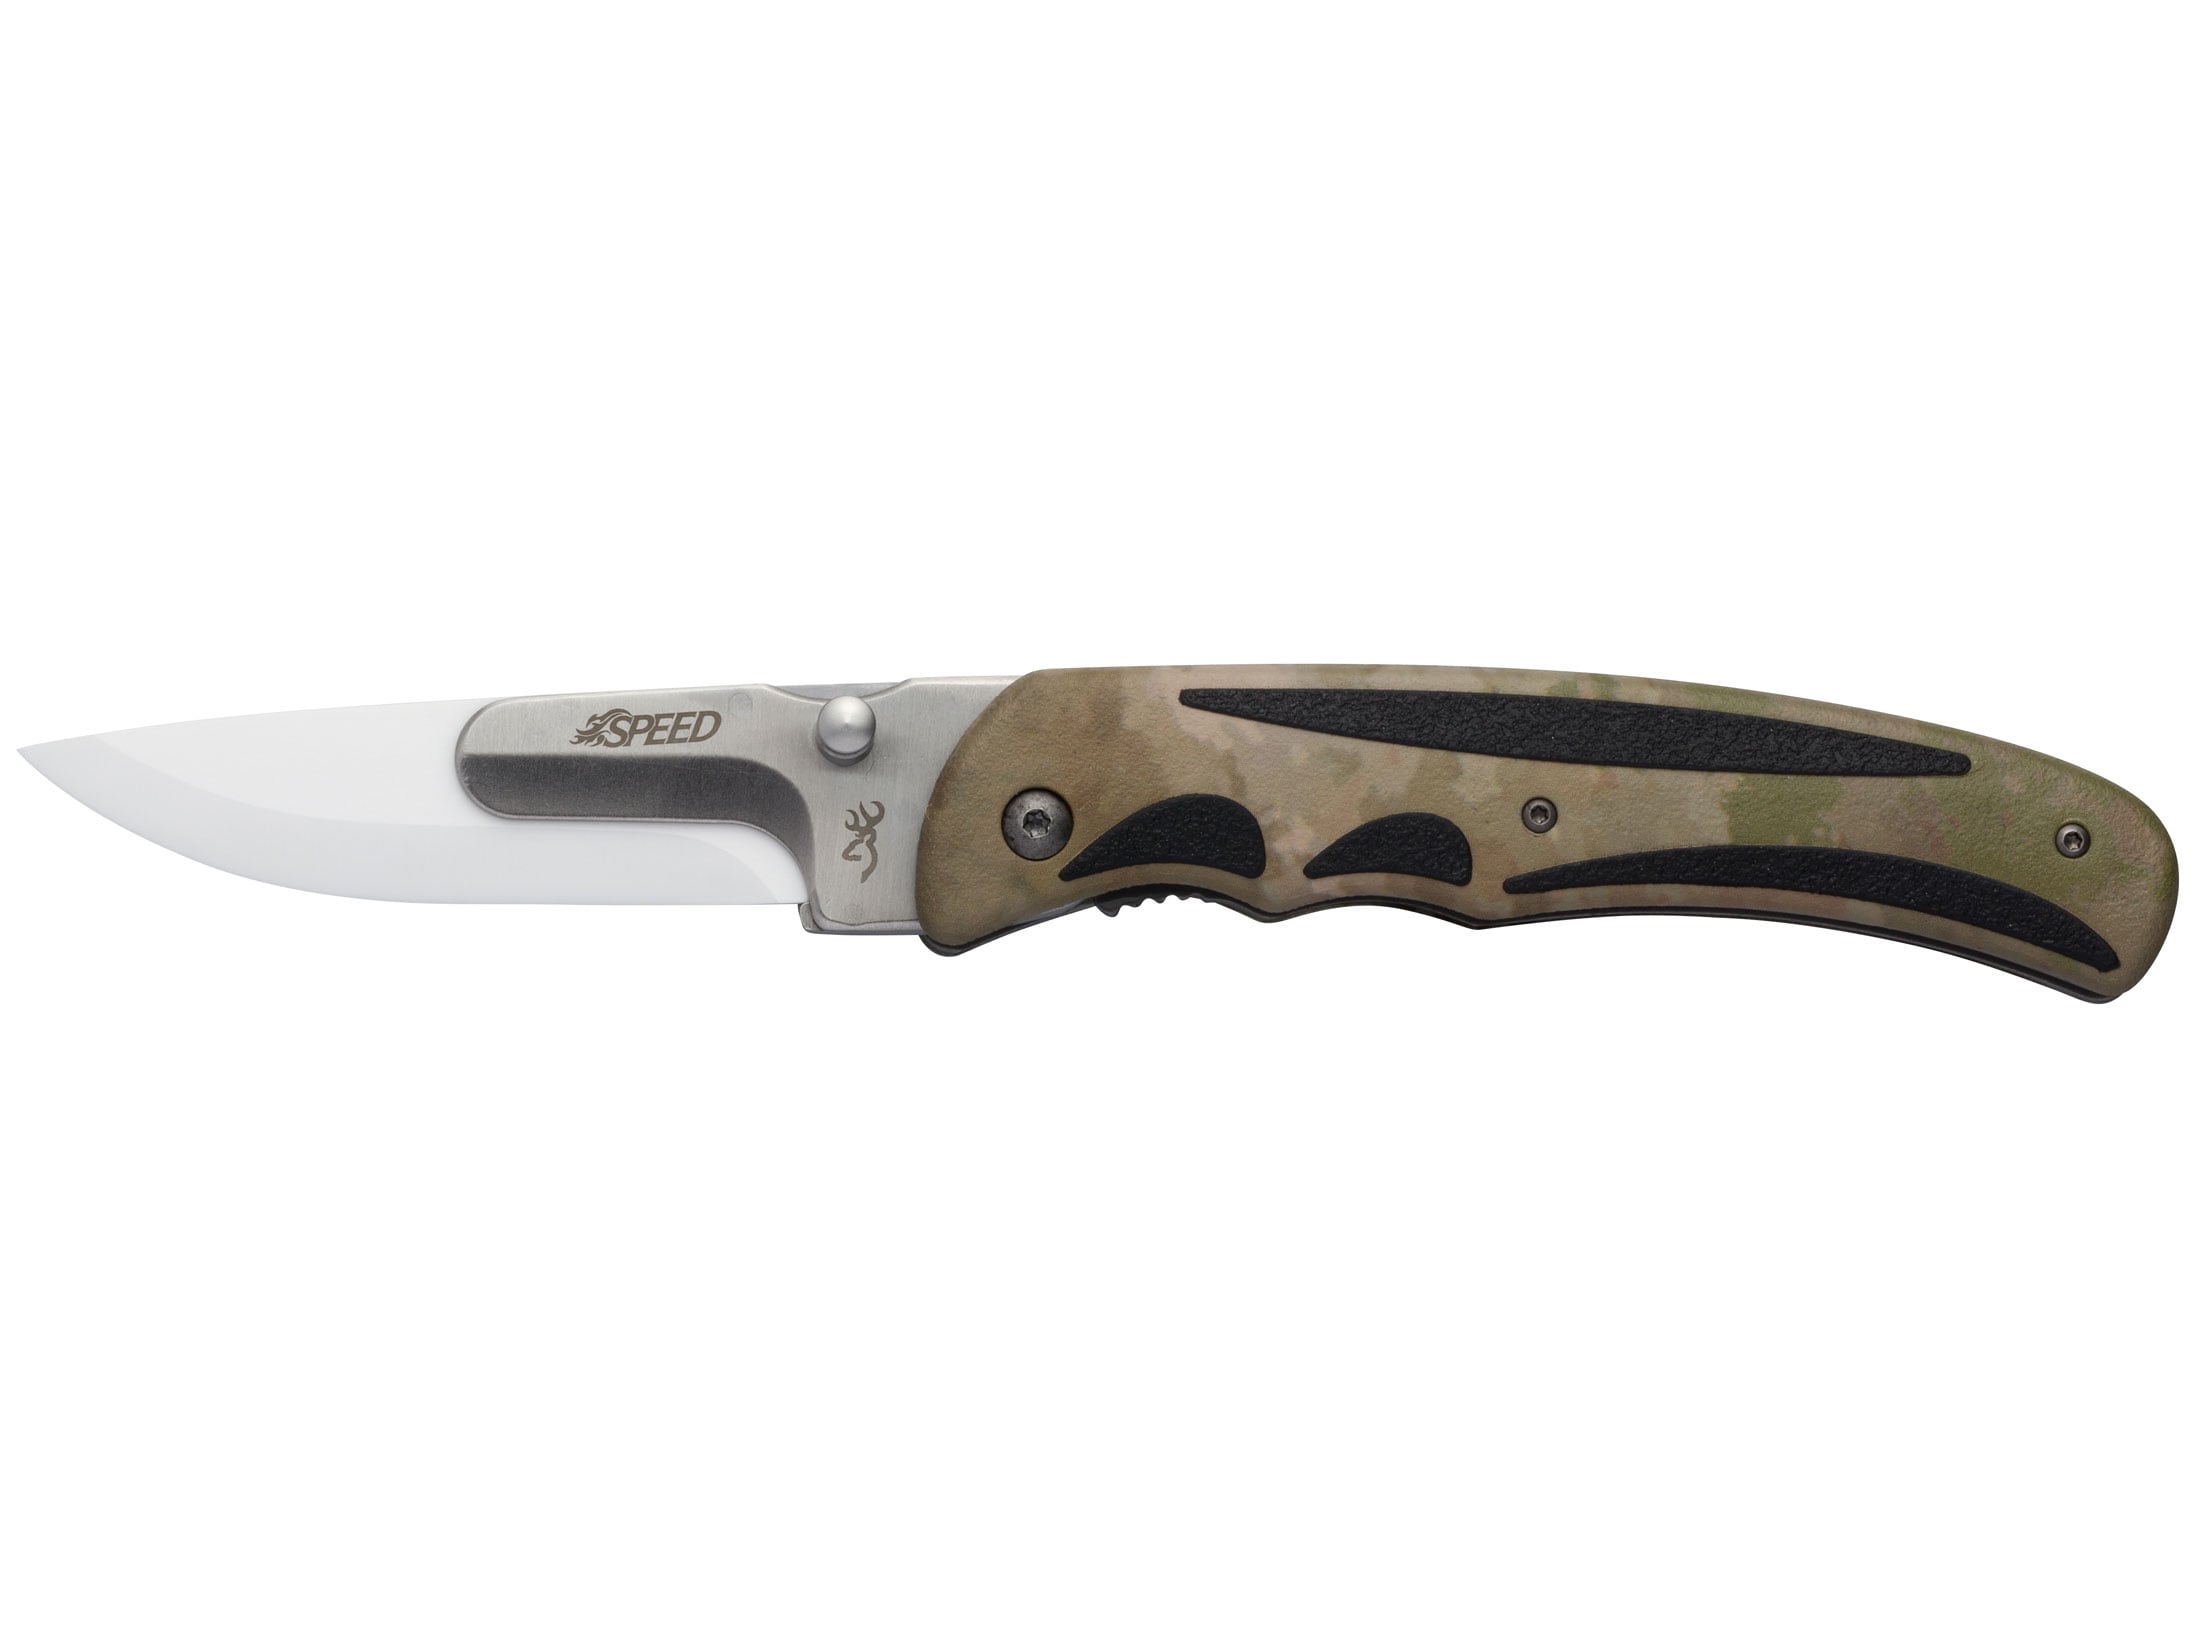 Ceramic Blade Pocket Knives - Lightweight Folding Knife - Ceramic